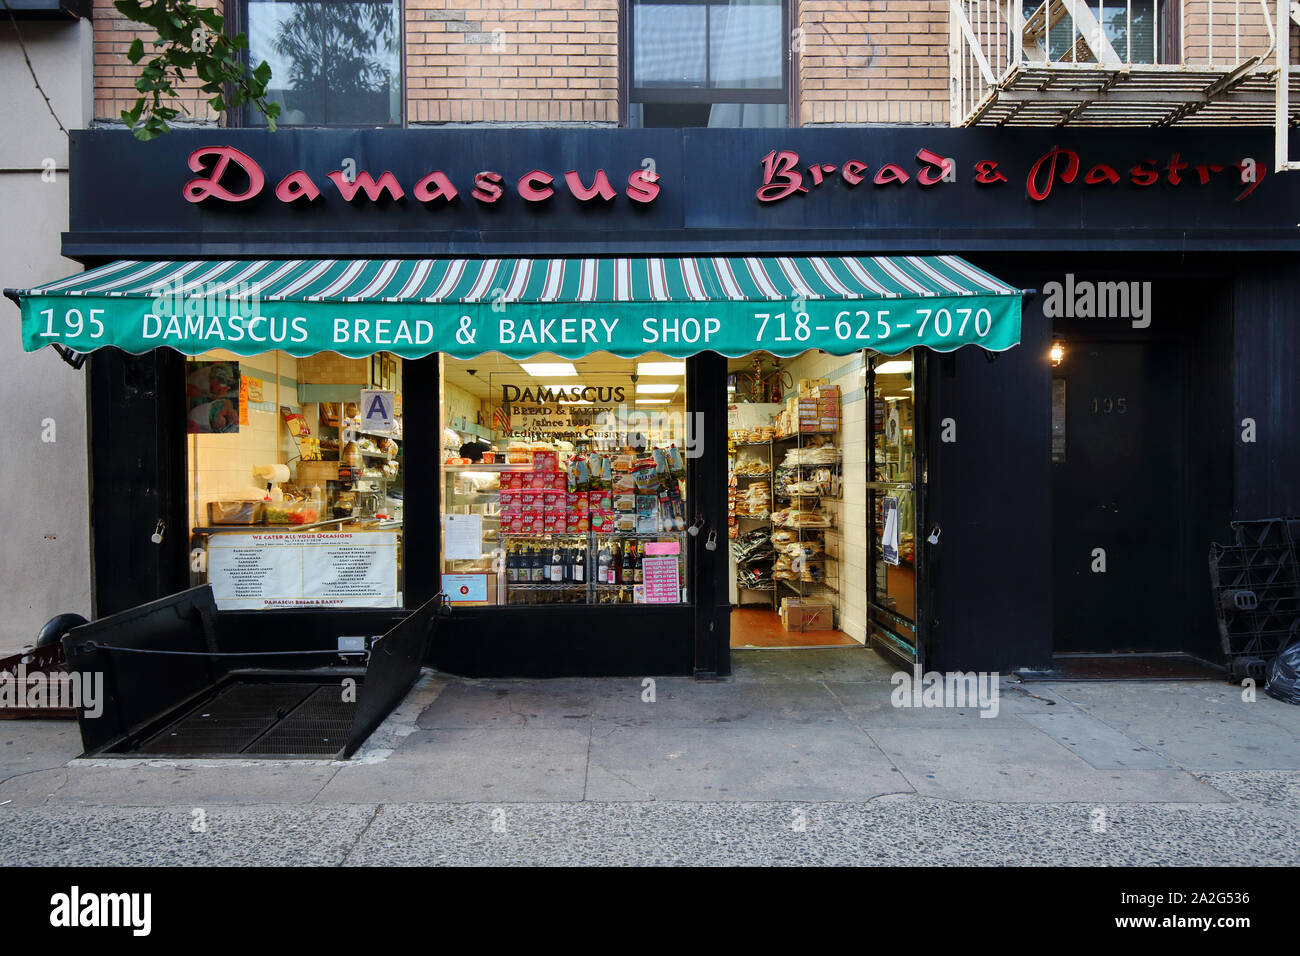 Damasco Bread & Pastry Shop, 195 Atlantic Avenue, Brooklyn, NY. escaparate exterior de un sirio, panadería de oriente medio en Brooklyn heights Foto de stock